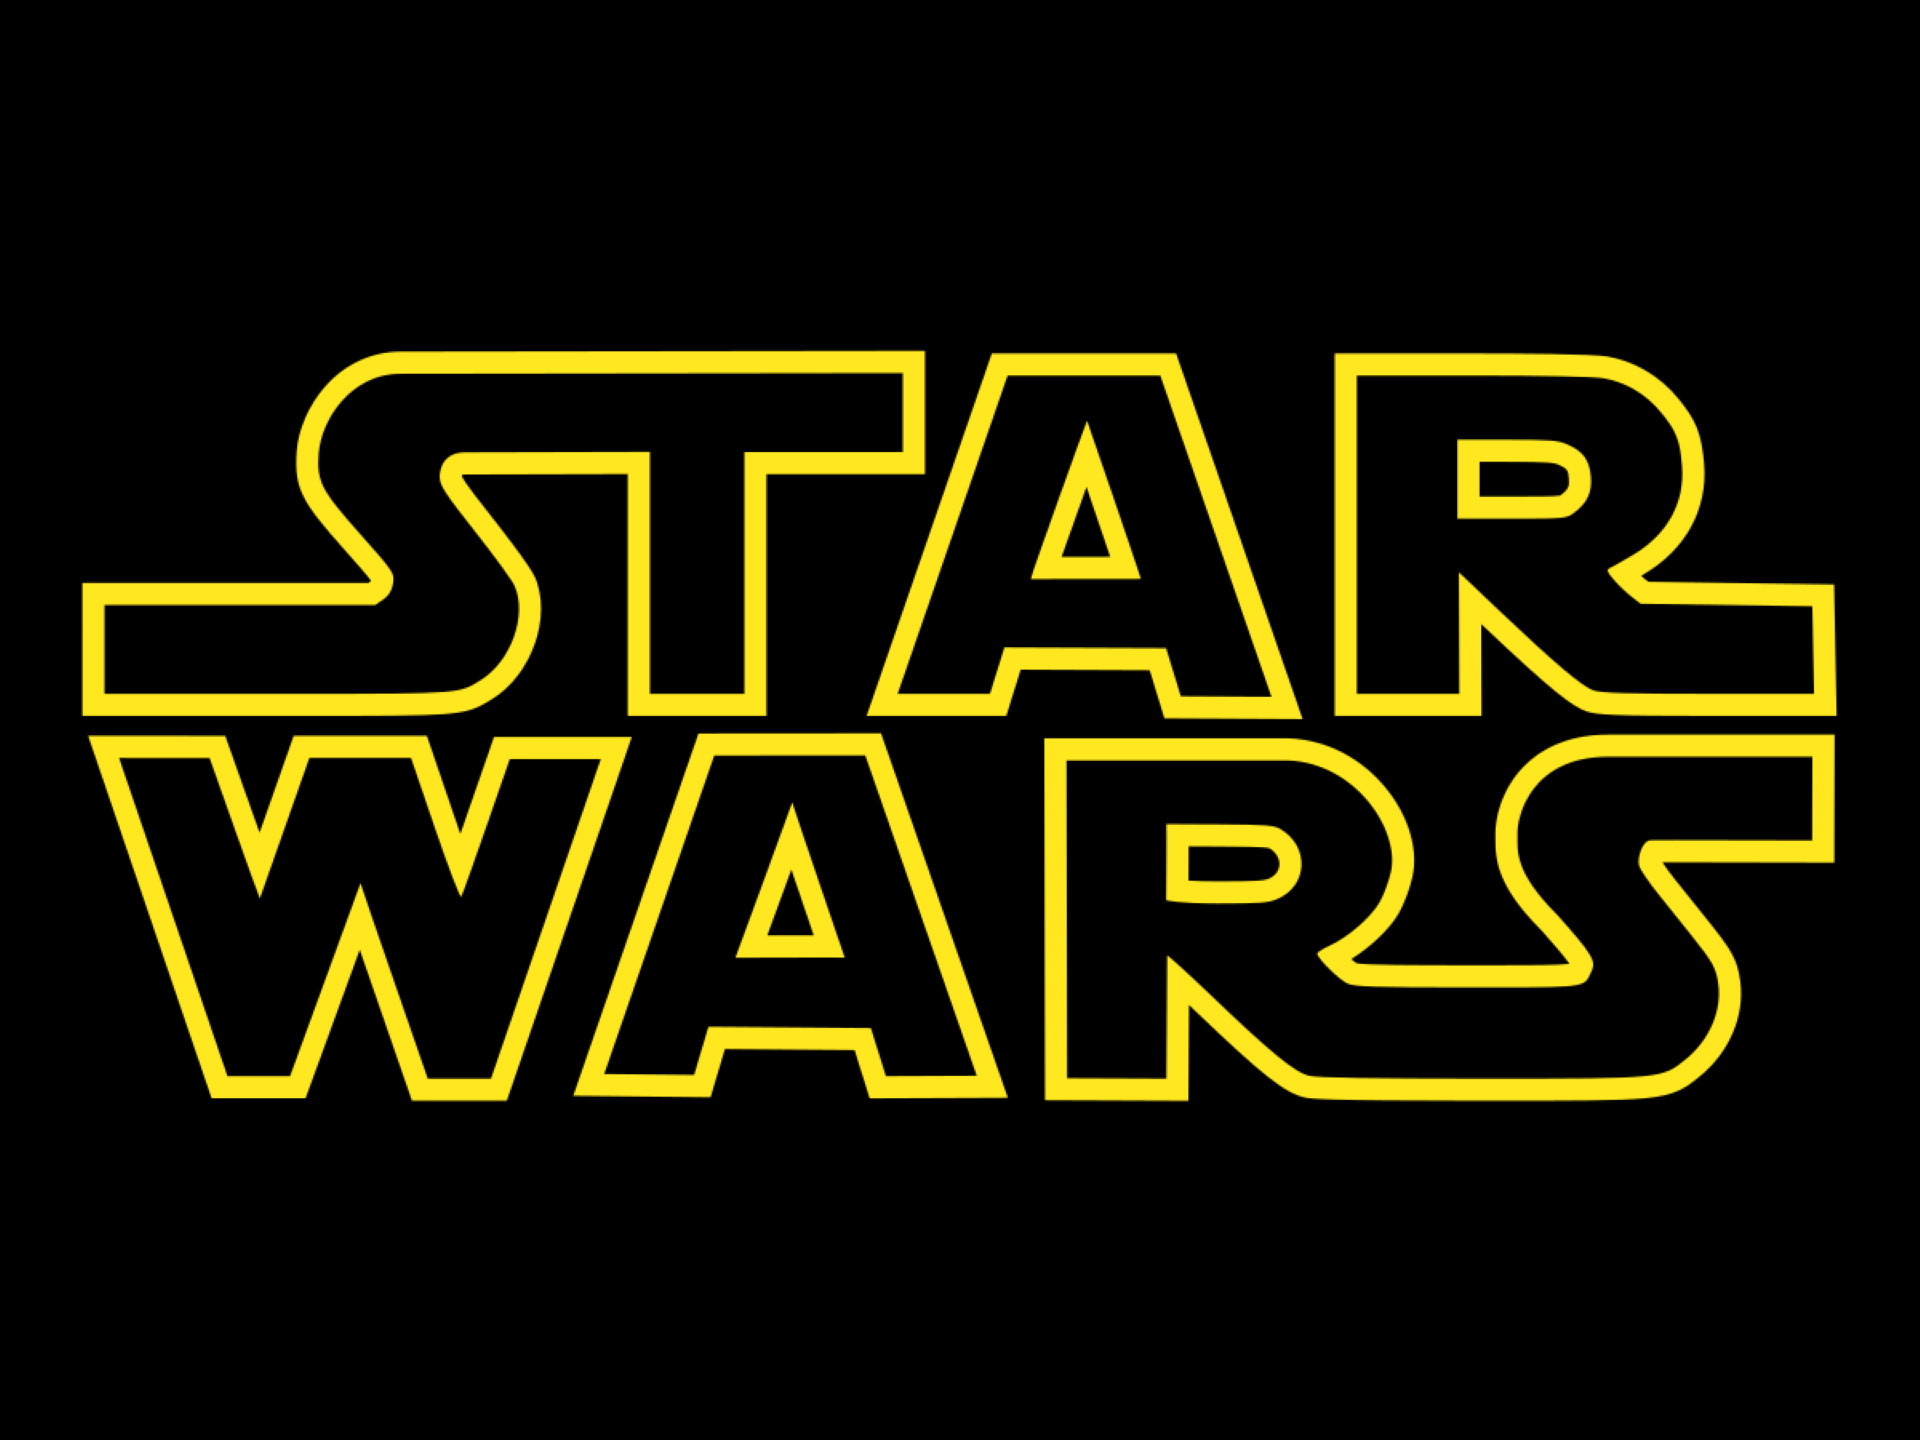 Star Wars: Jsou názvy celé ságy pomíchané?